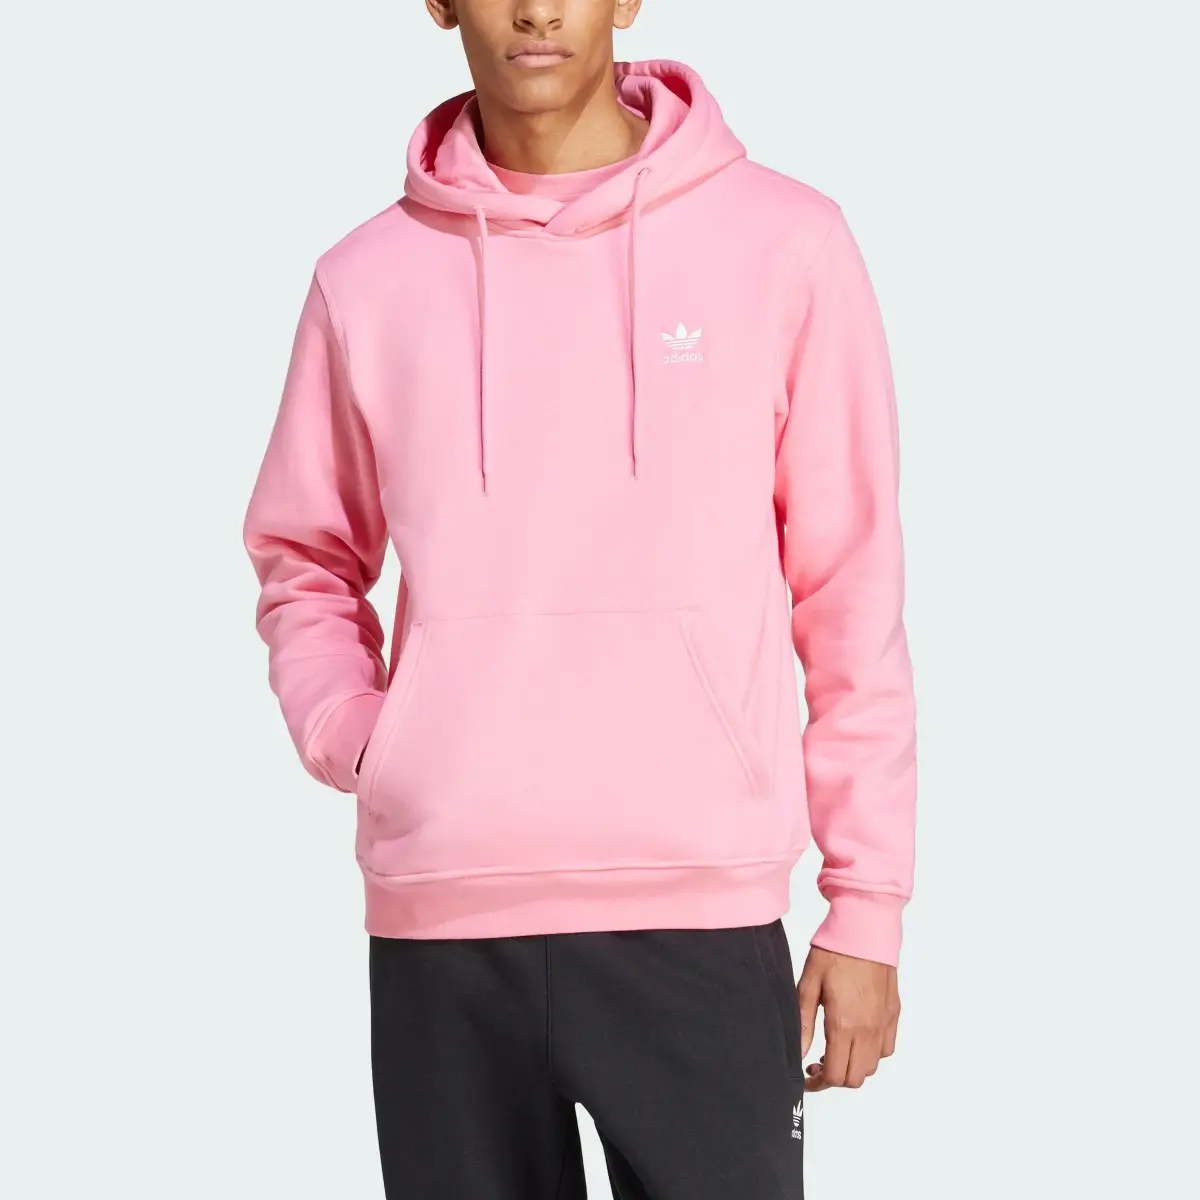 Adidas Hoodie Pink. 1